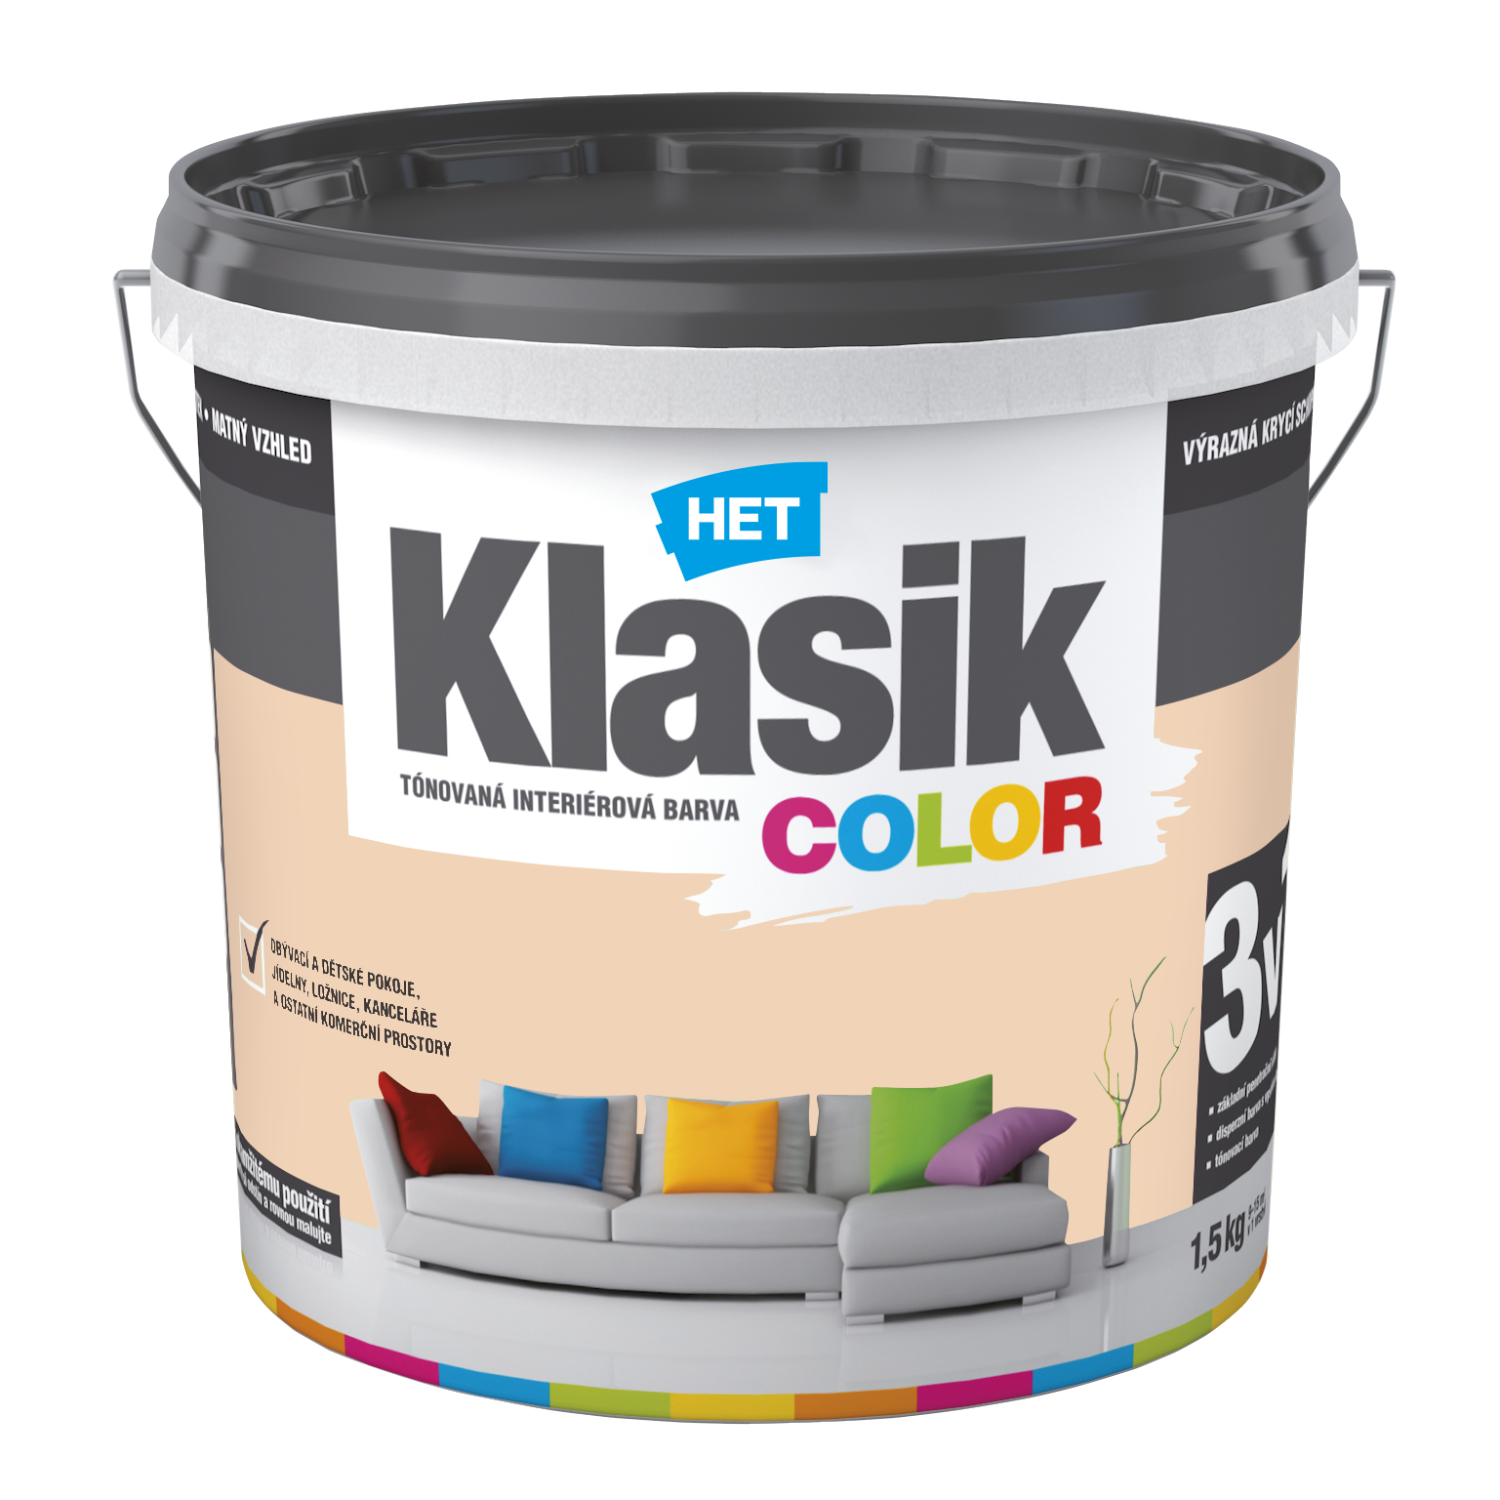 HET Klasik COLOR tónovaná interiérová akrylátová disperzná oteruvzdorná farba 1,5 kg, KC0728 - oranžový broskyňový